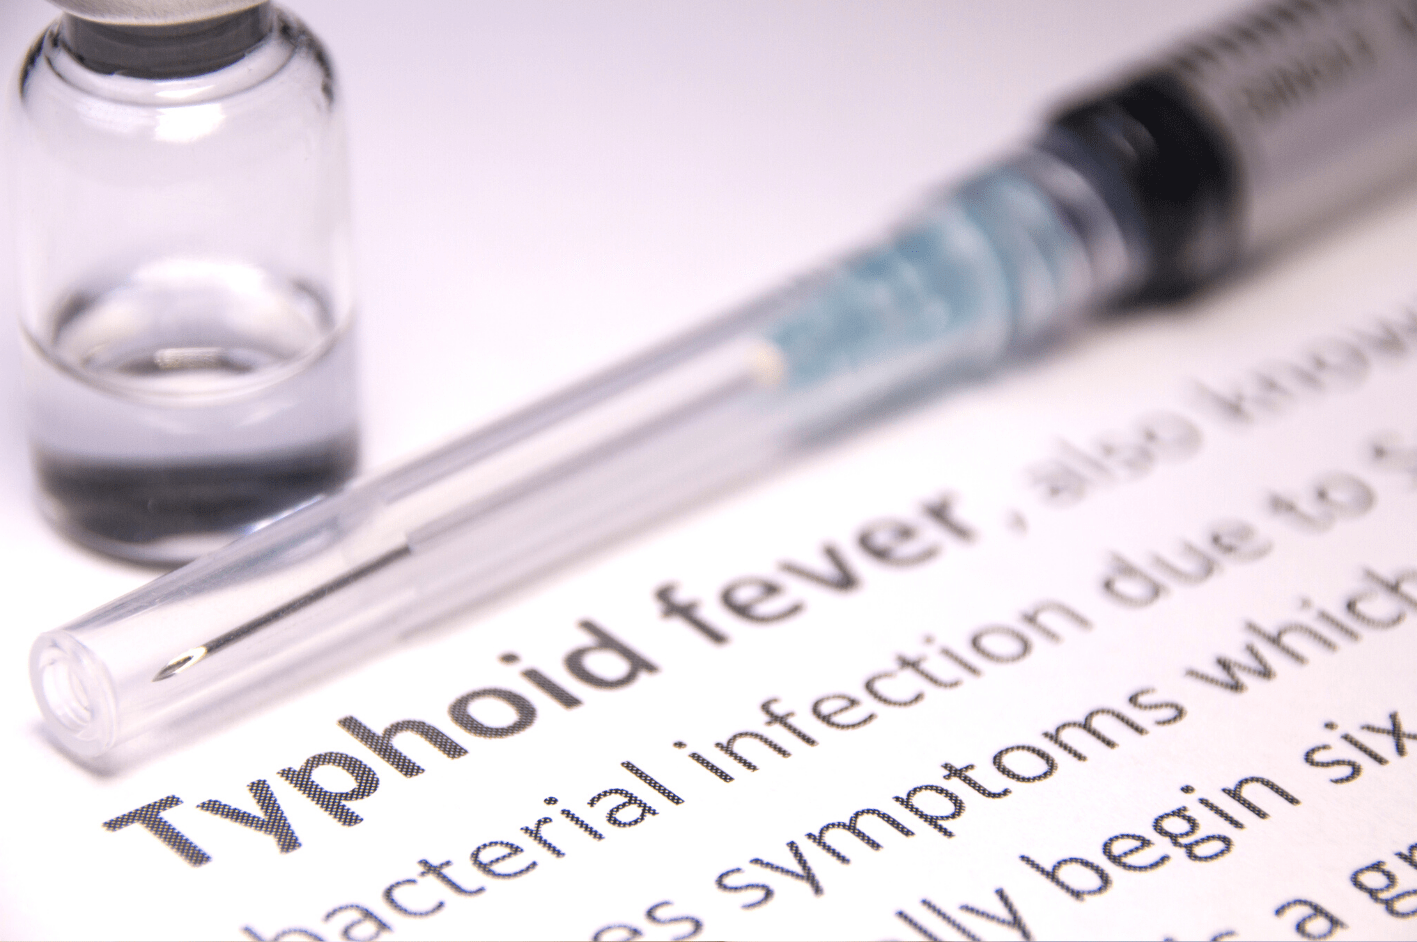 Typhoid Vaccine